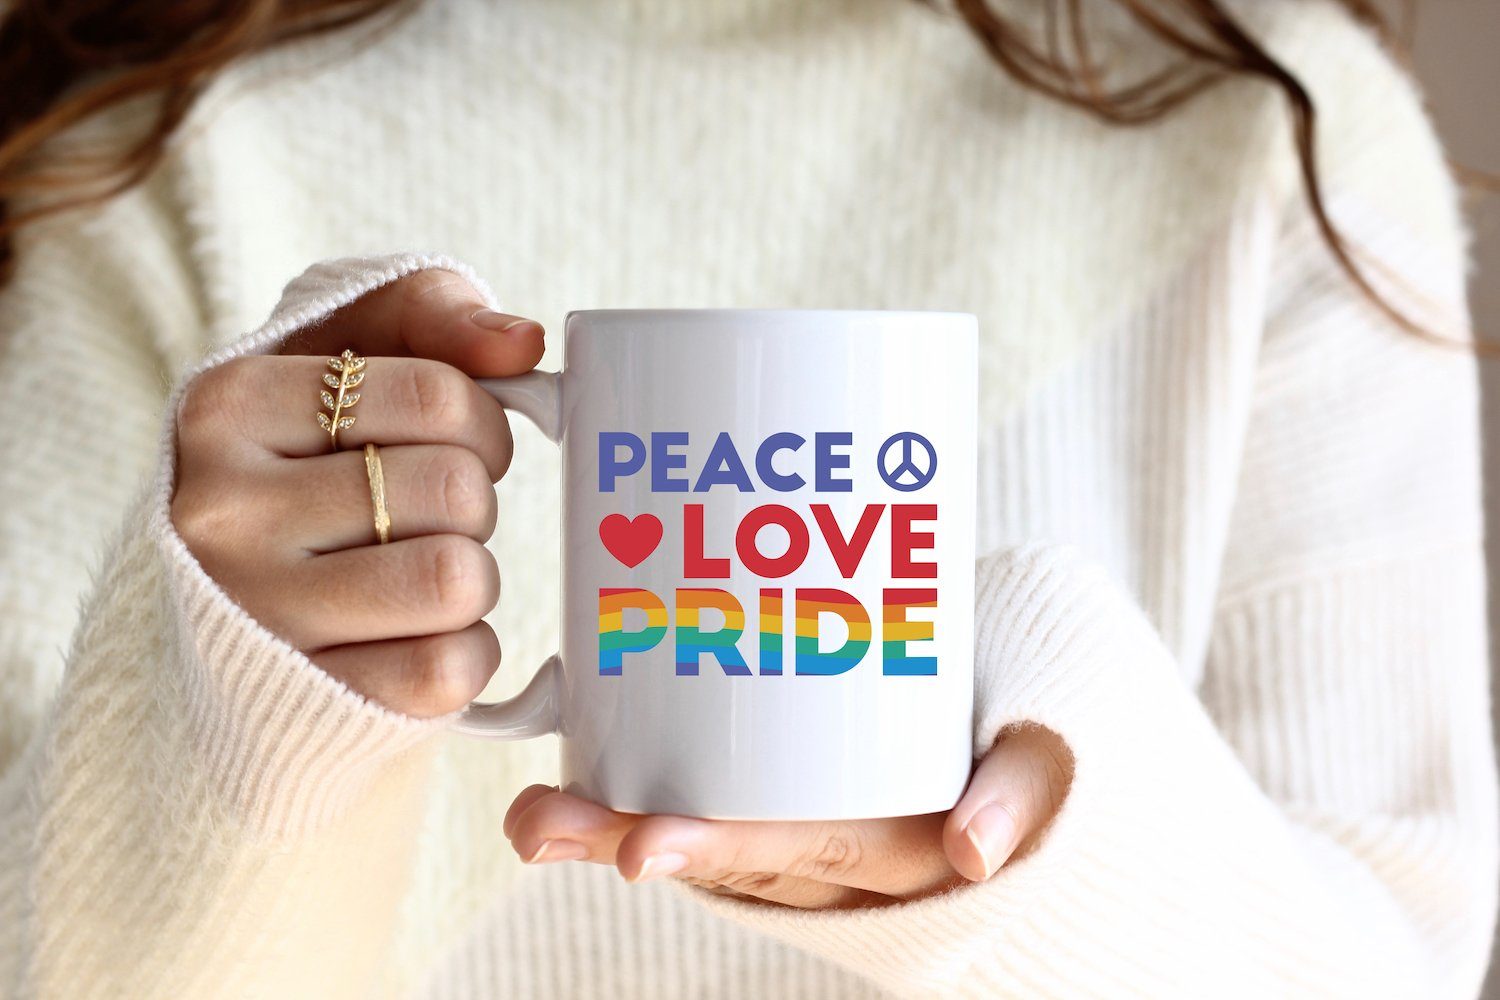 Peace Kaffeetasse Geschenk, trendigem Tasse mit Youth Designz Motiv Keramik, Love Weiss/Rosa Pride